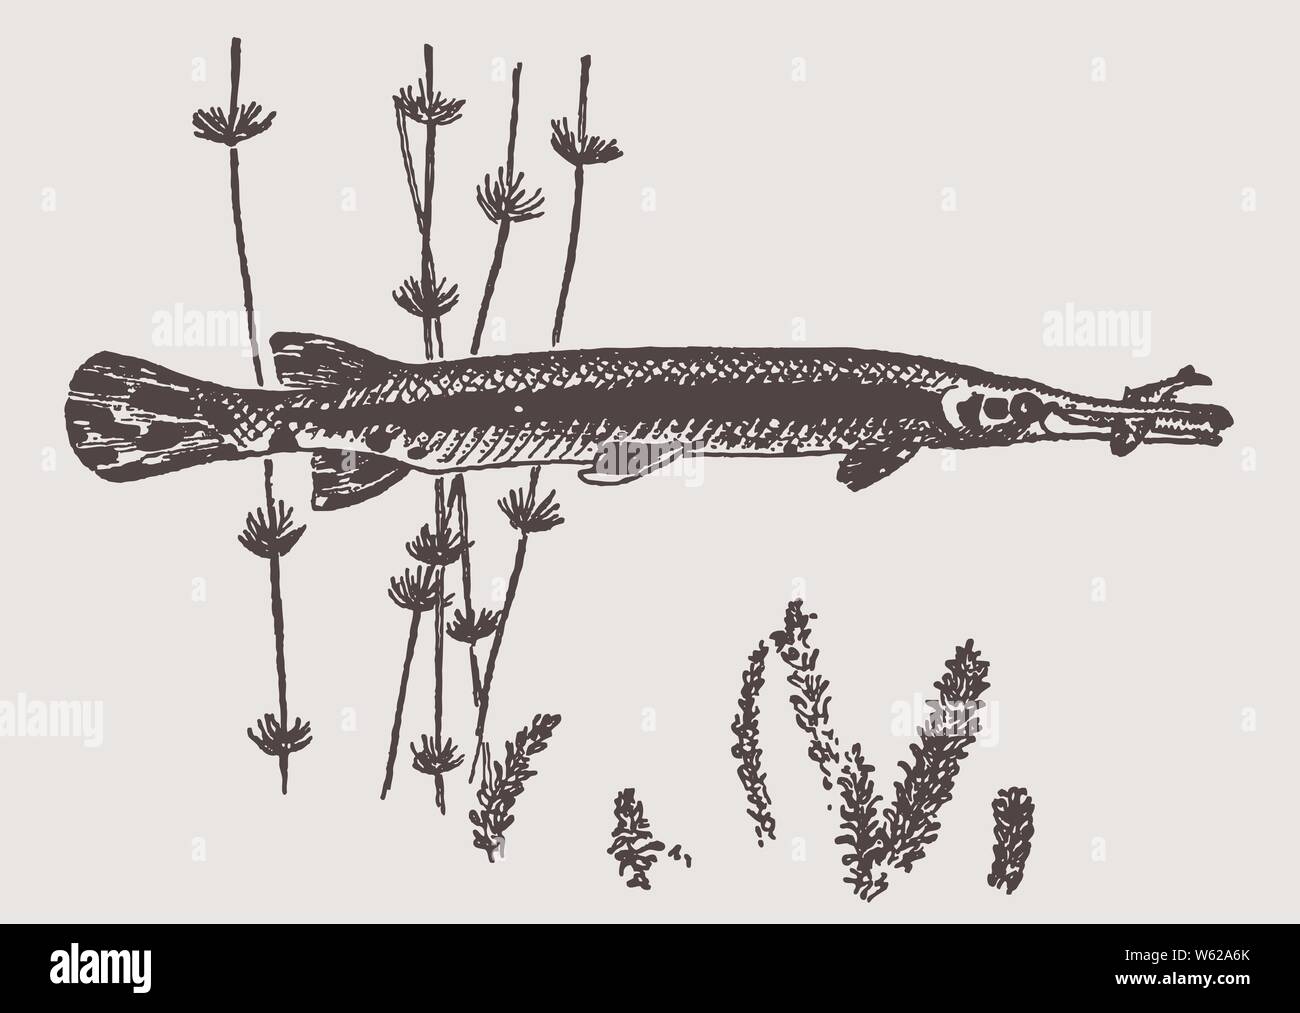 Longnose gar (lepisosteus osseus) ha catturato un pesce piccolo nelle sue ganasce. Illustrazione dopo una incisione storica risalente agli inizi del XX secolo Illustrazione Vettoriale